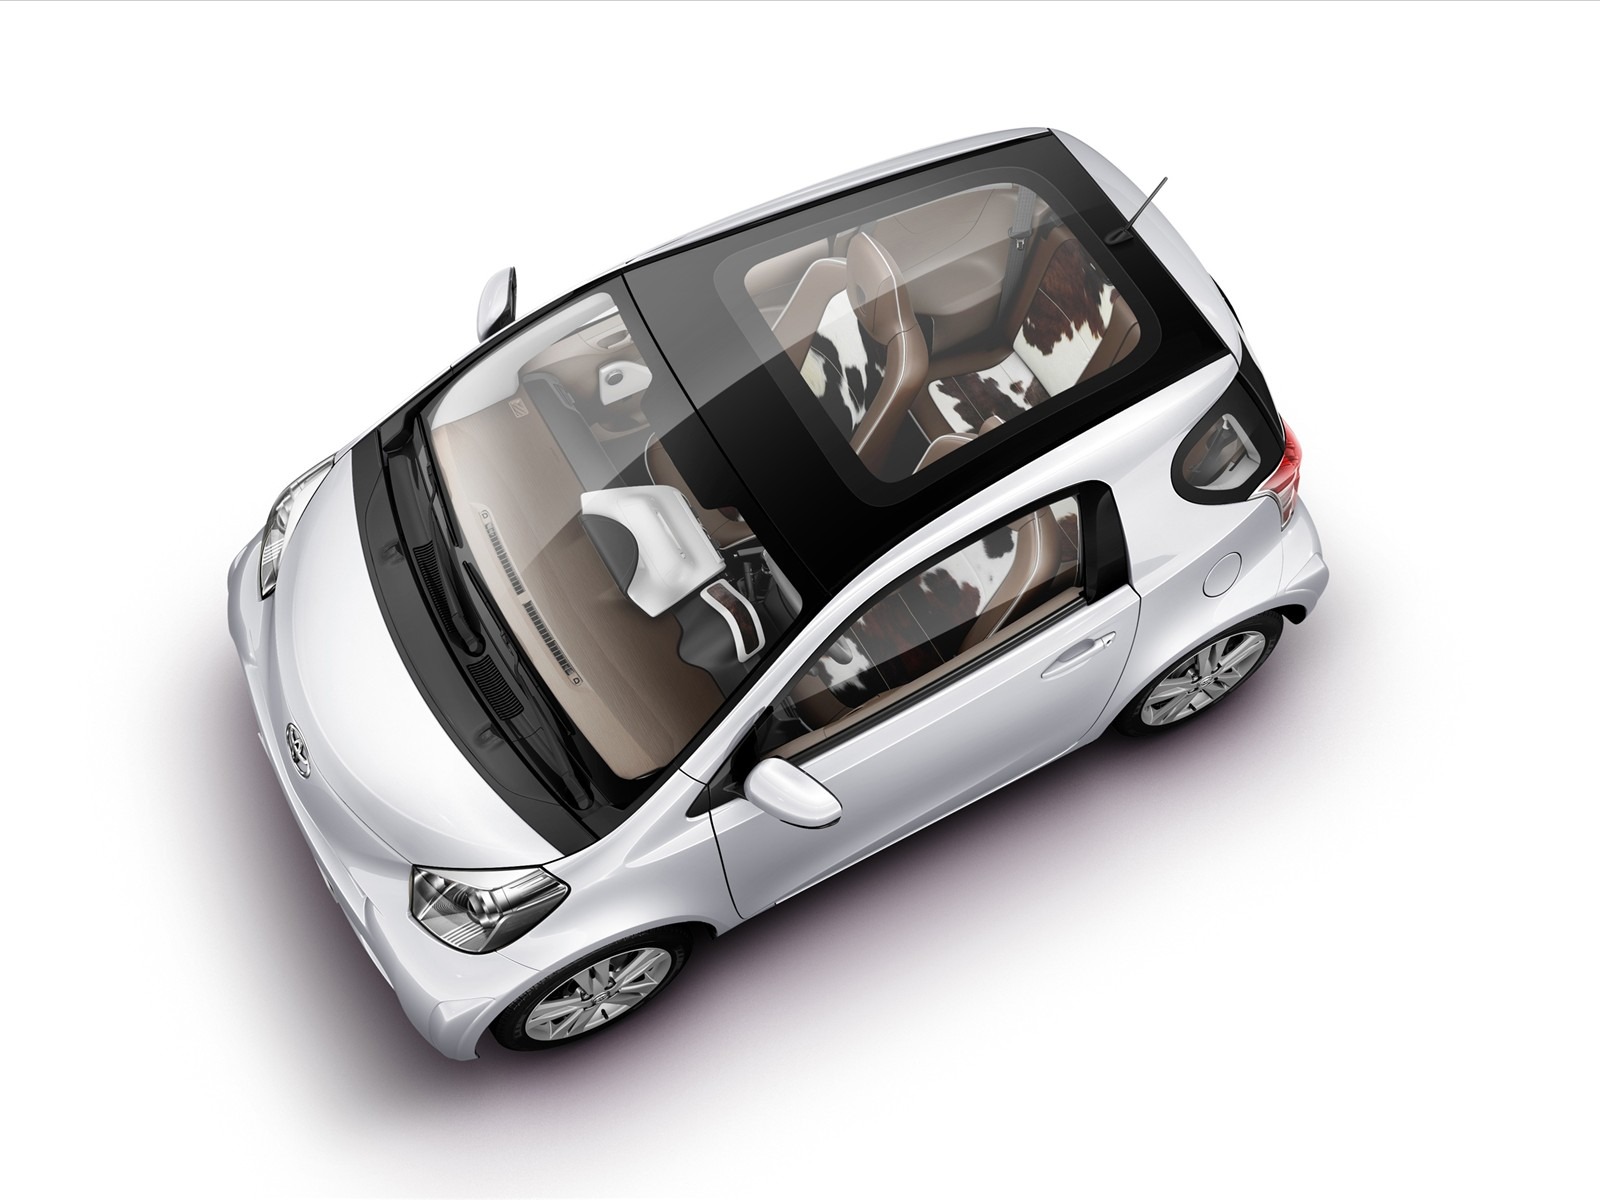 édition spéciale de concept cars fond d'écran (14) #12 - 1600x1200